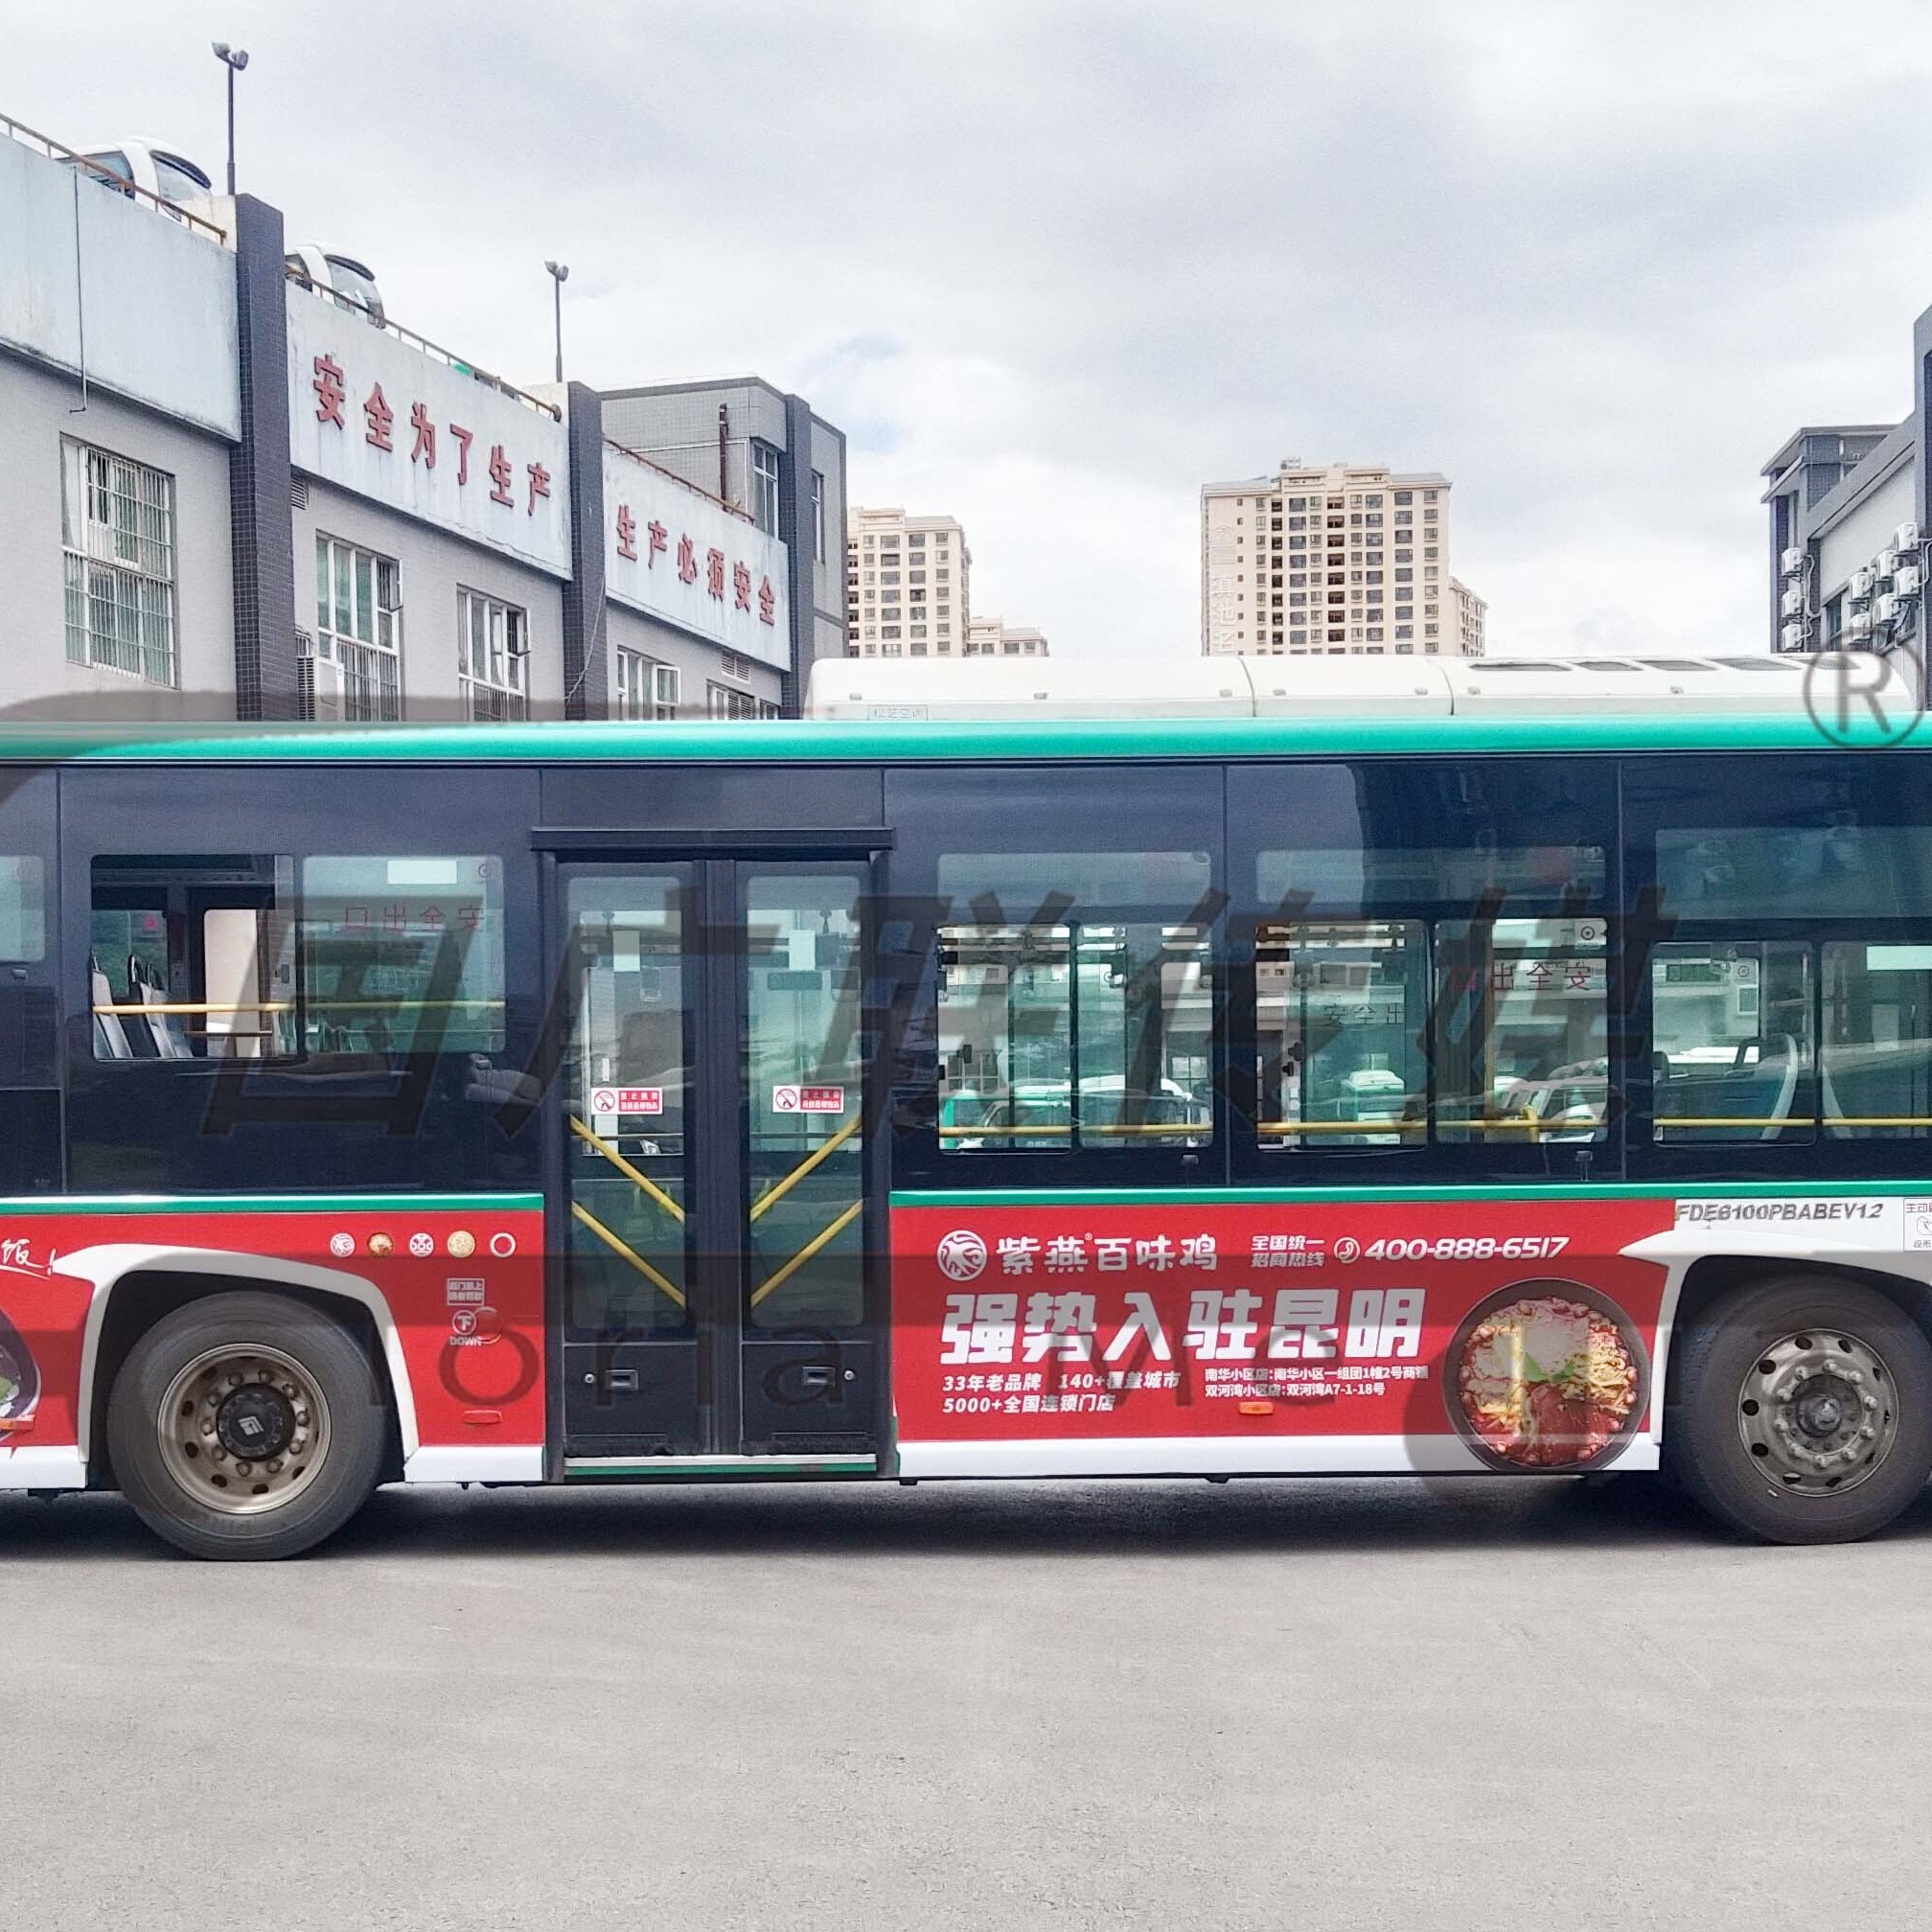 在昆明投放公交车身广告，激发品牌传播潜力